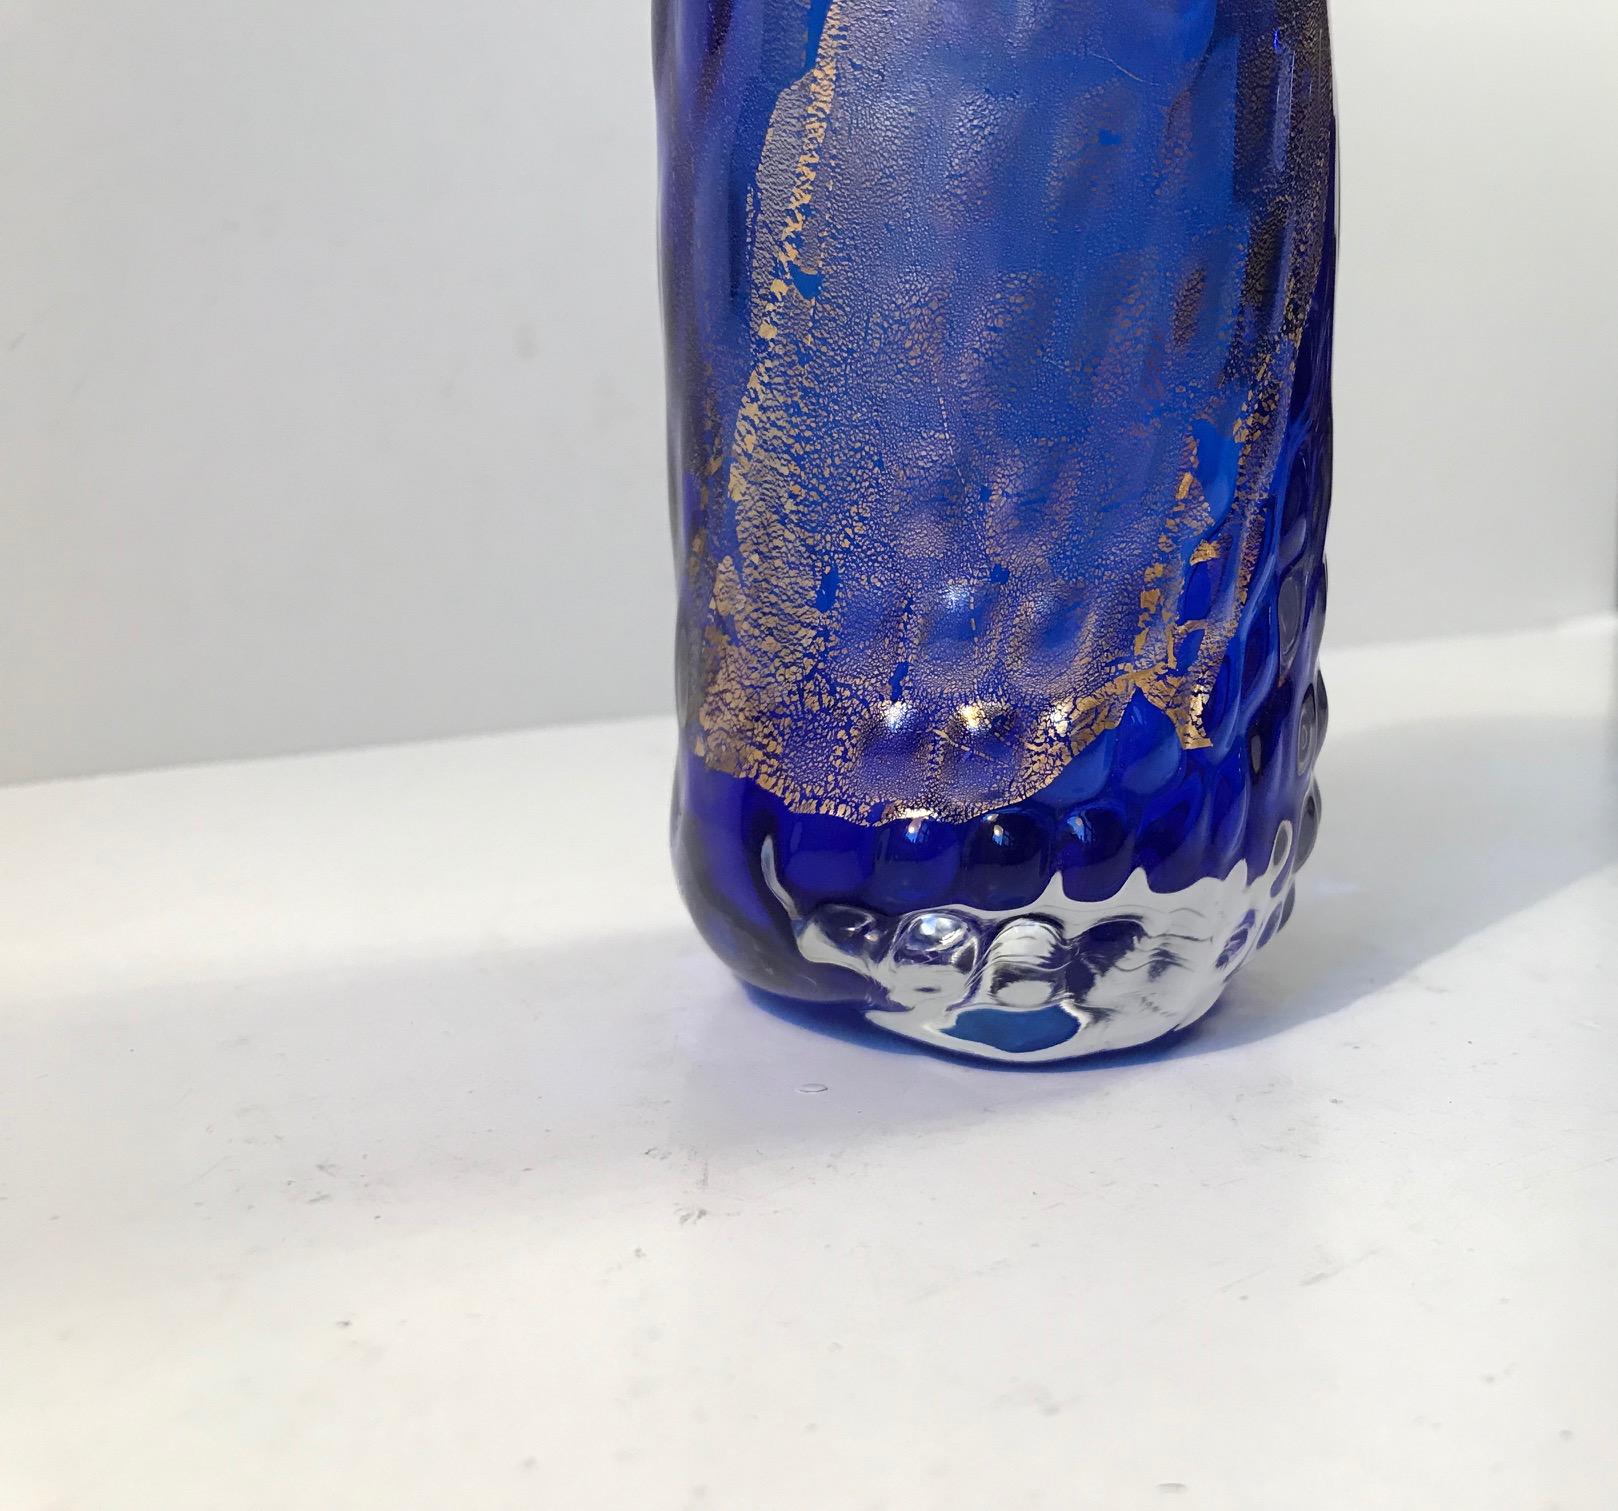 Blaue Glasvase, verziert und mit 24-karätigem Goldstaub durchzogen. Es ist ein Einzelstück und wurde in den 1990er Jahren von Tchai Munch geschaffen, der eine Werkstatt in Ebeltoft, Dänemark, besitzt. In den 1980er, 1990er und 00er Jahren hatte sie